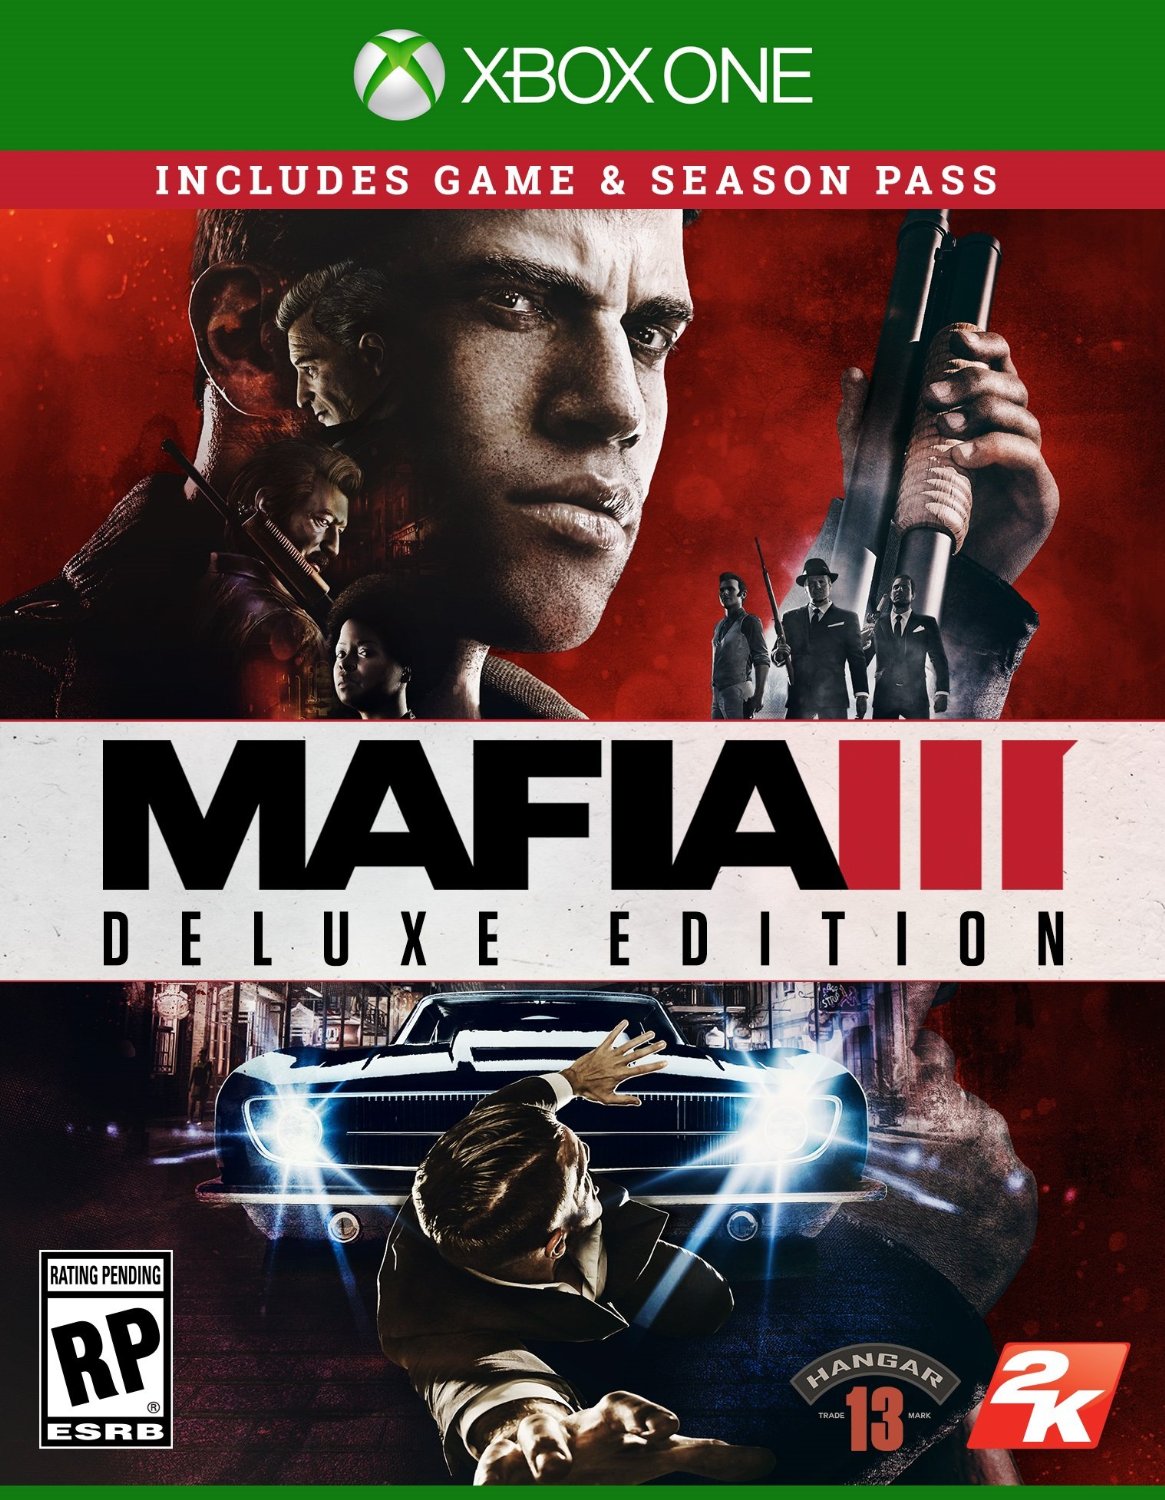 Mafia 3 - deluxe (Xbox One version)